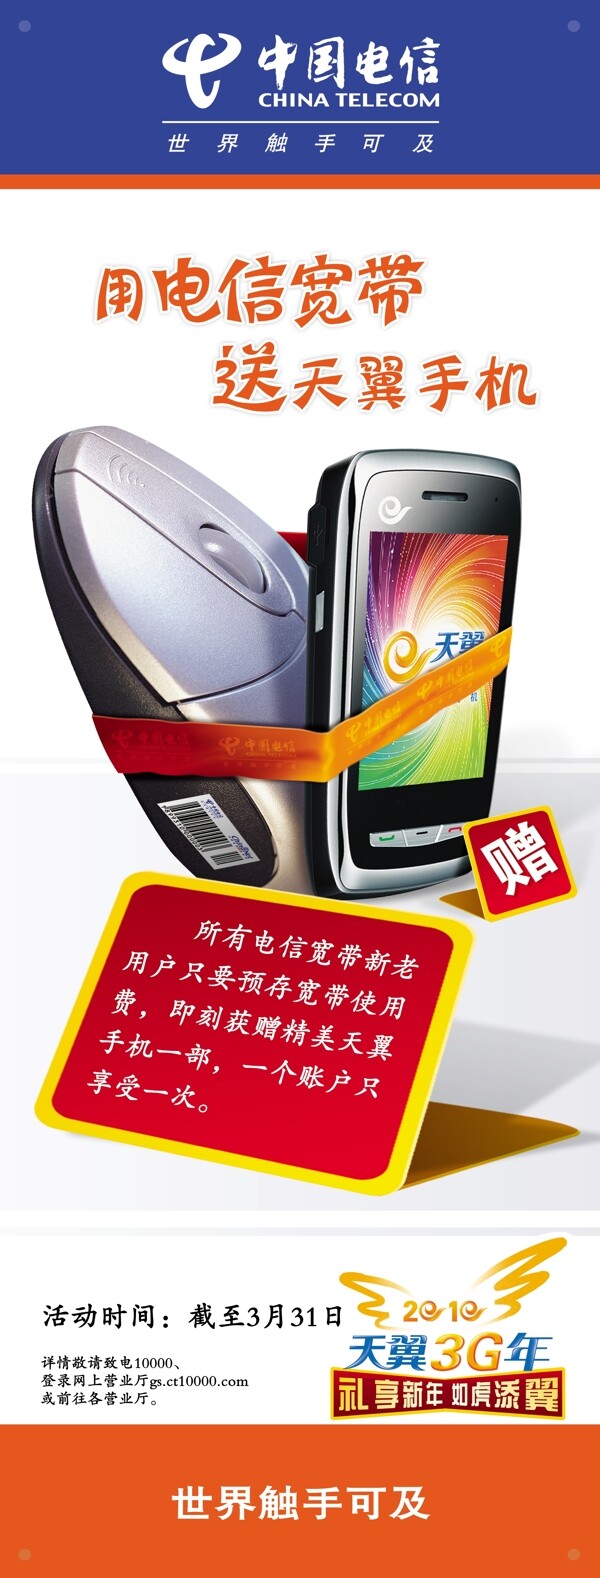 中国电信x展架装宽带送手机篇